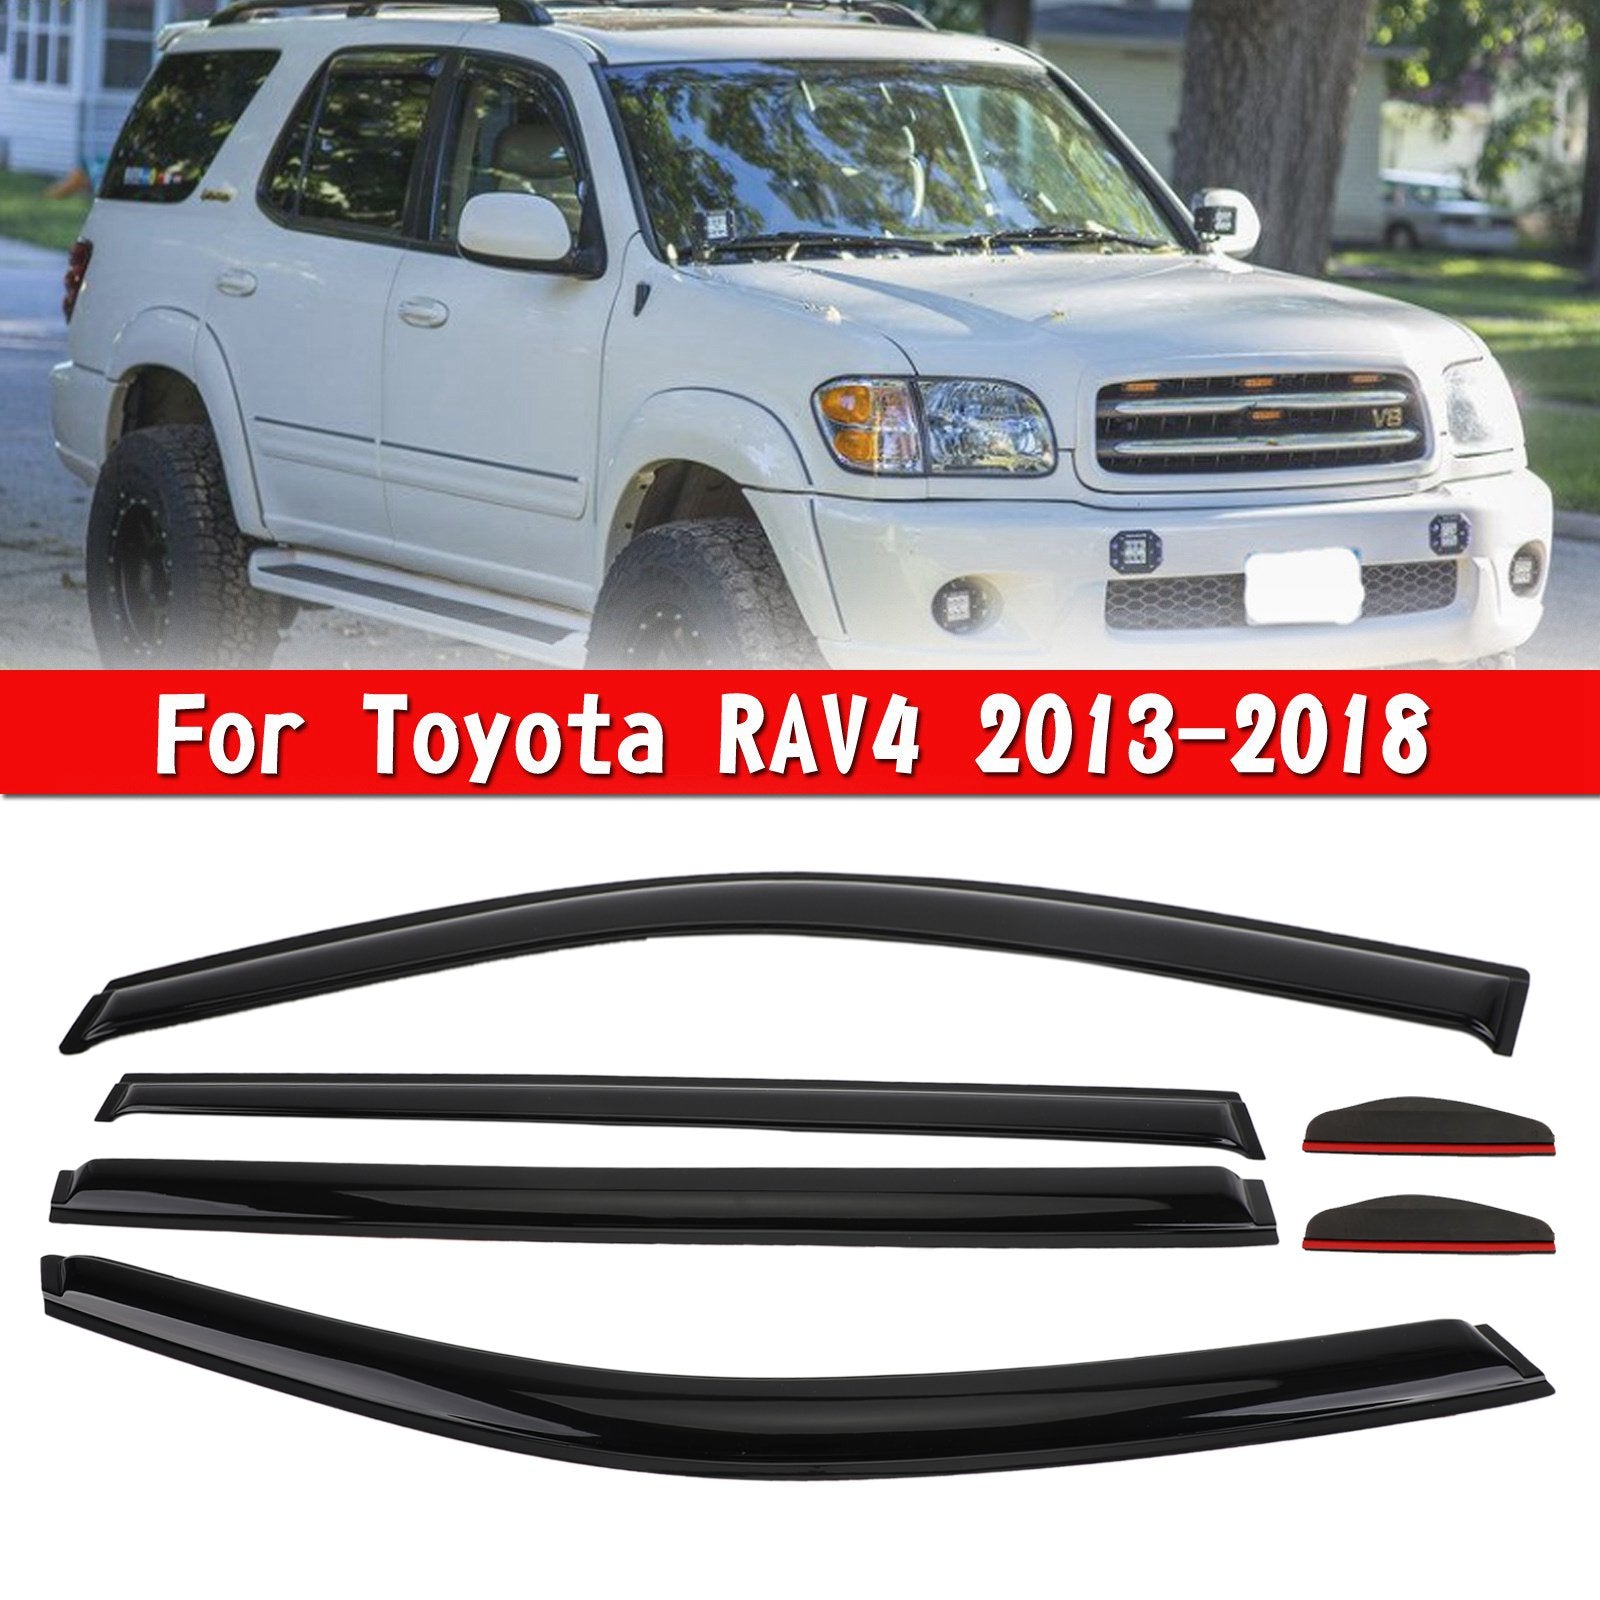 Toyota RAV4 2013-2018 Car Window Sun Rain Guard Visors Kit 6PCS